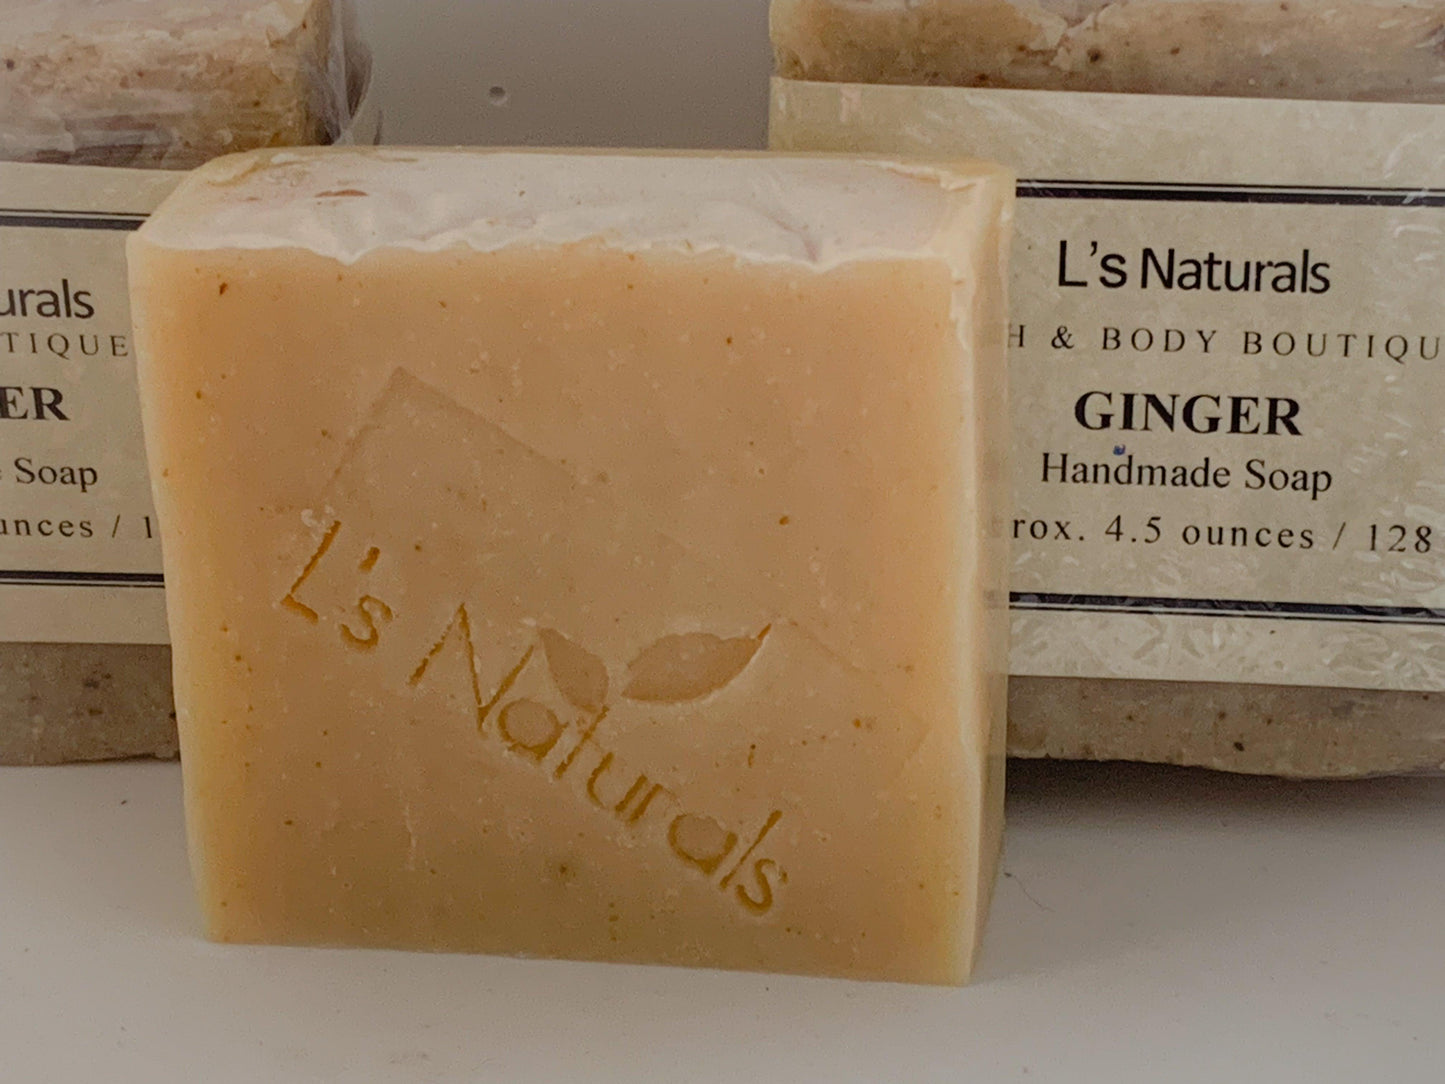 Ginger Handmade Soap